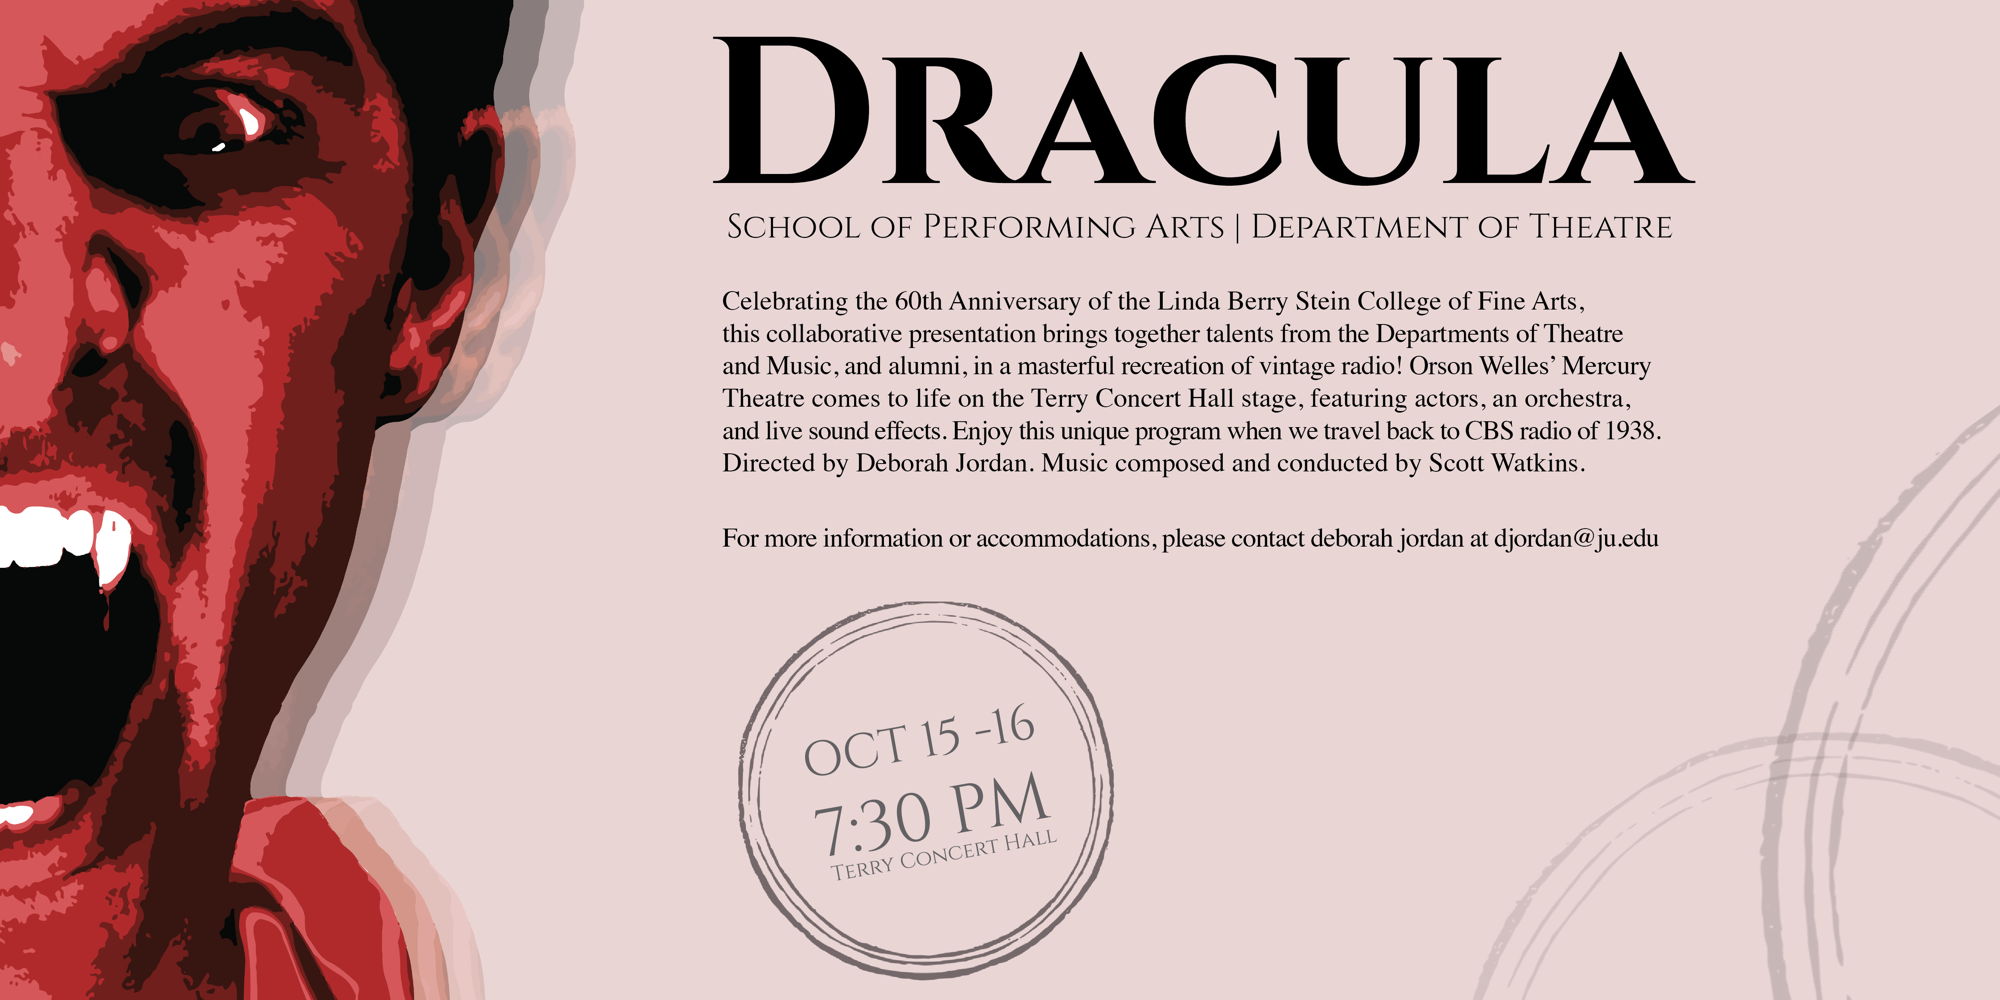 Dracula promotional image